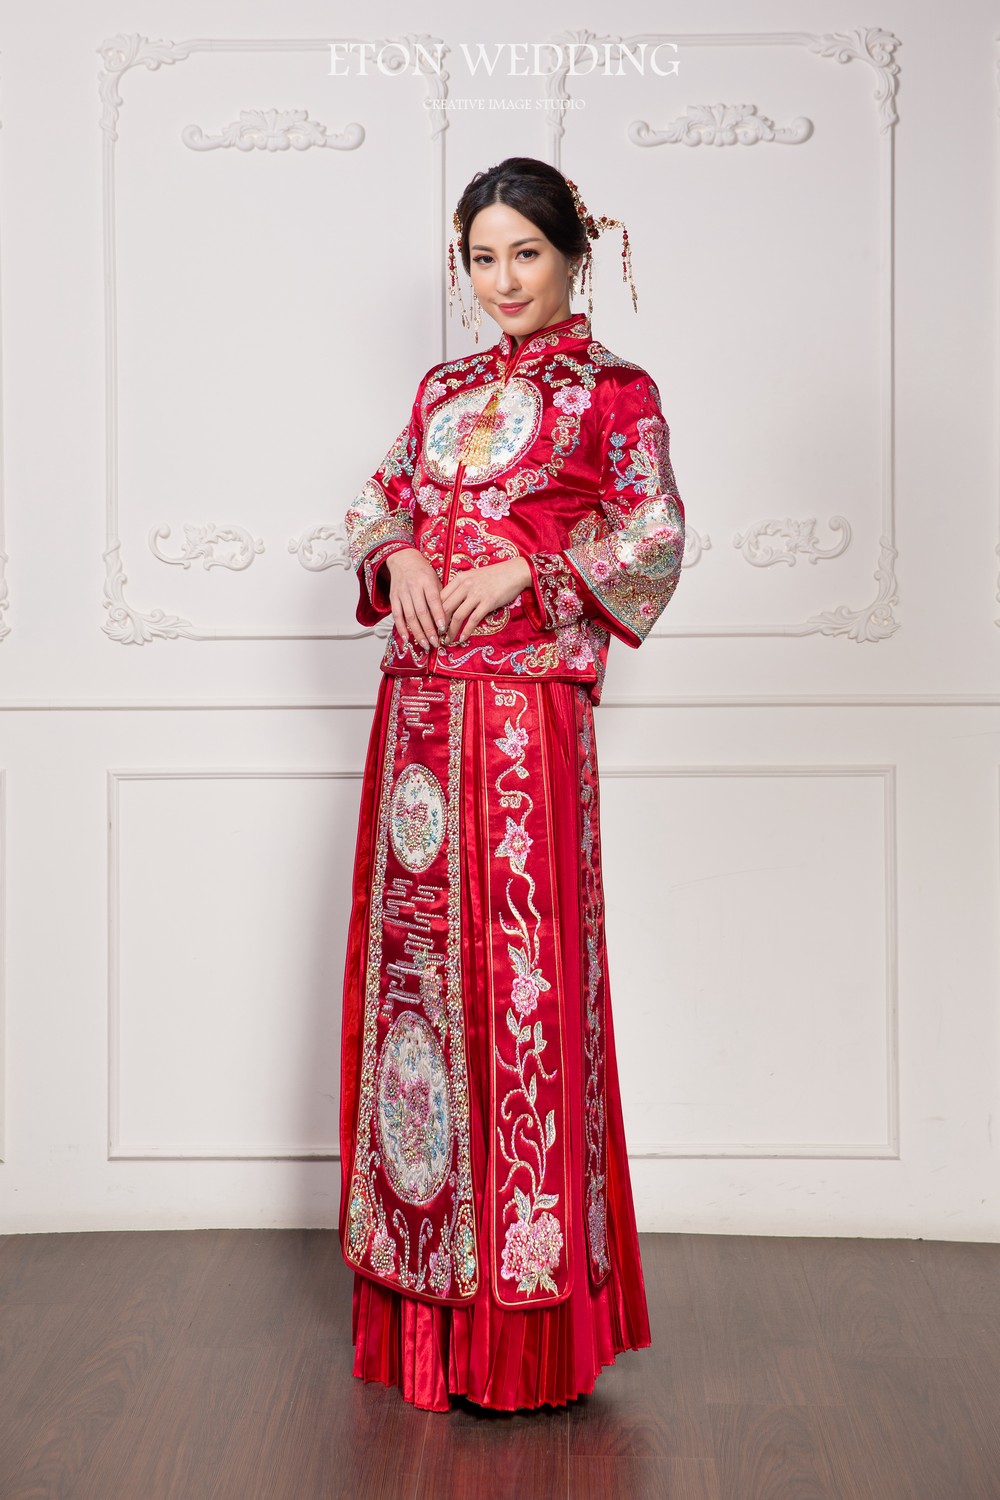 中式禮服,中式婚紗,秀禾服,龍鳳褂,旗袍婚紗,改良式旗袍